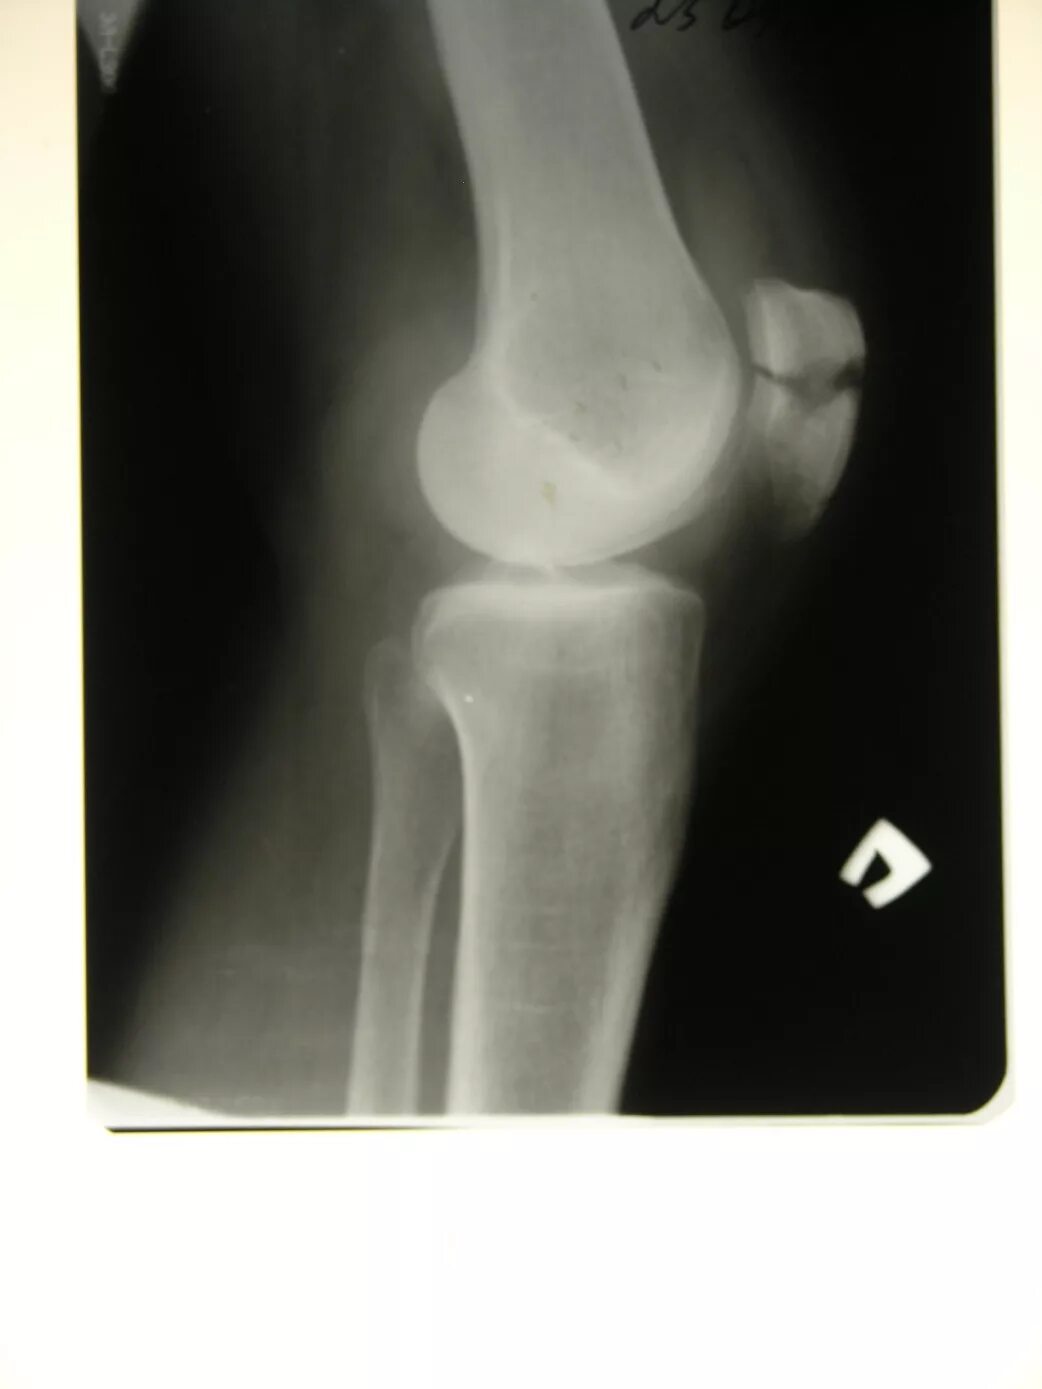 Перелом надколенника остеосинтез. Перелом коленной чашечки рентген. Перелом надколенника и остеосинтез по Веберу. Металлоостеосинтез перелома надколенника.